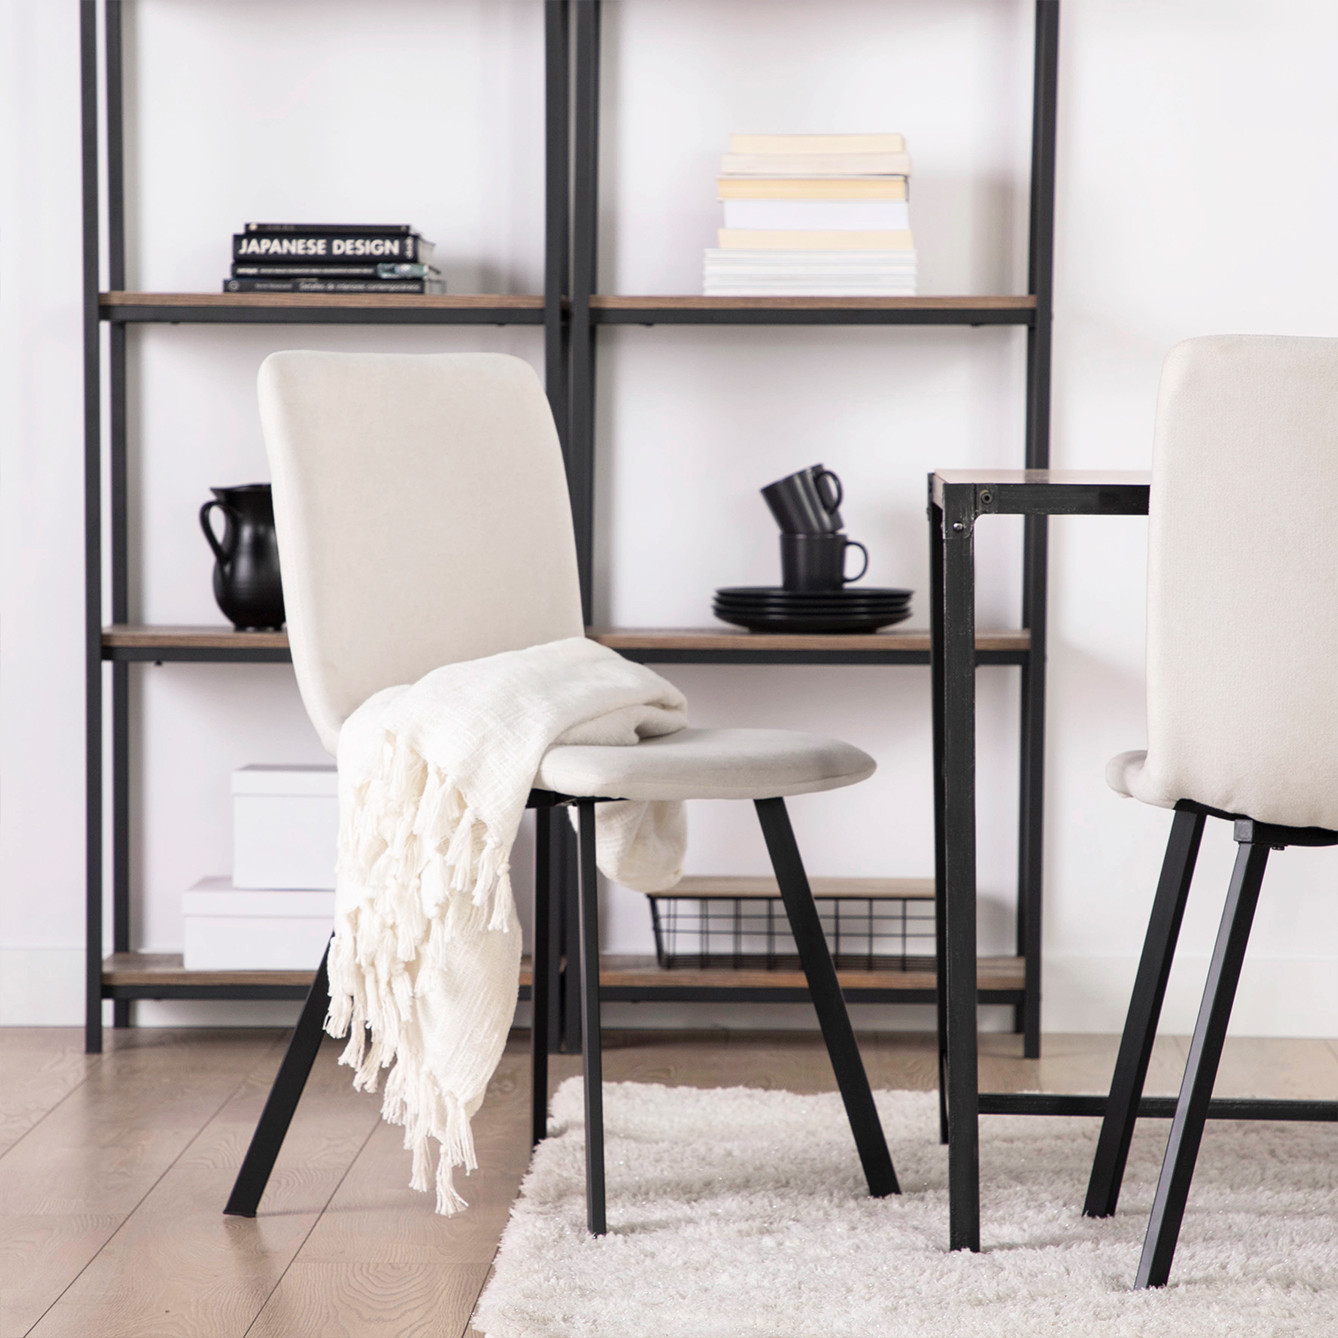 La silla de comedor Maia en tapizado beige con pata metálica negra es capaz de transformar por completo la decoración de tu comedor aportando un extra de elegancia y sofisticación. Un diseño realizado para adaptarse a nuestro cuerpo